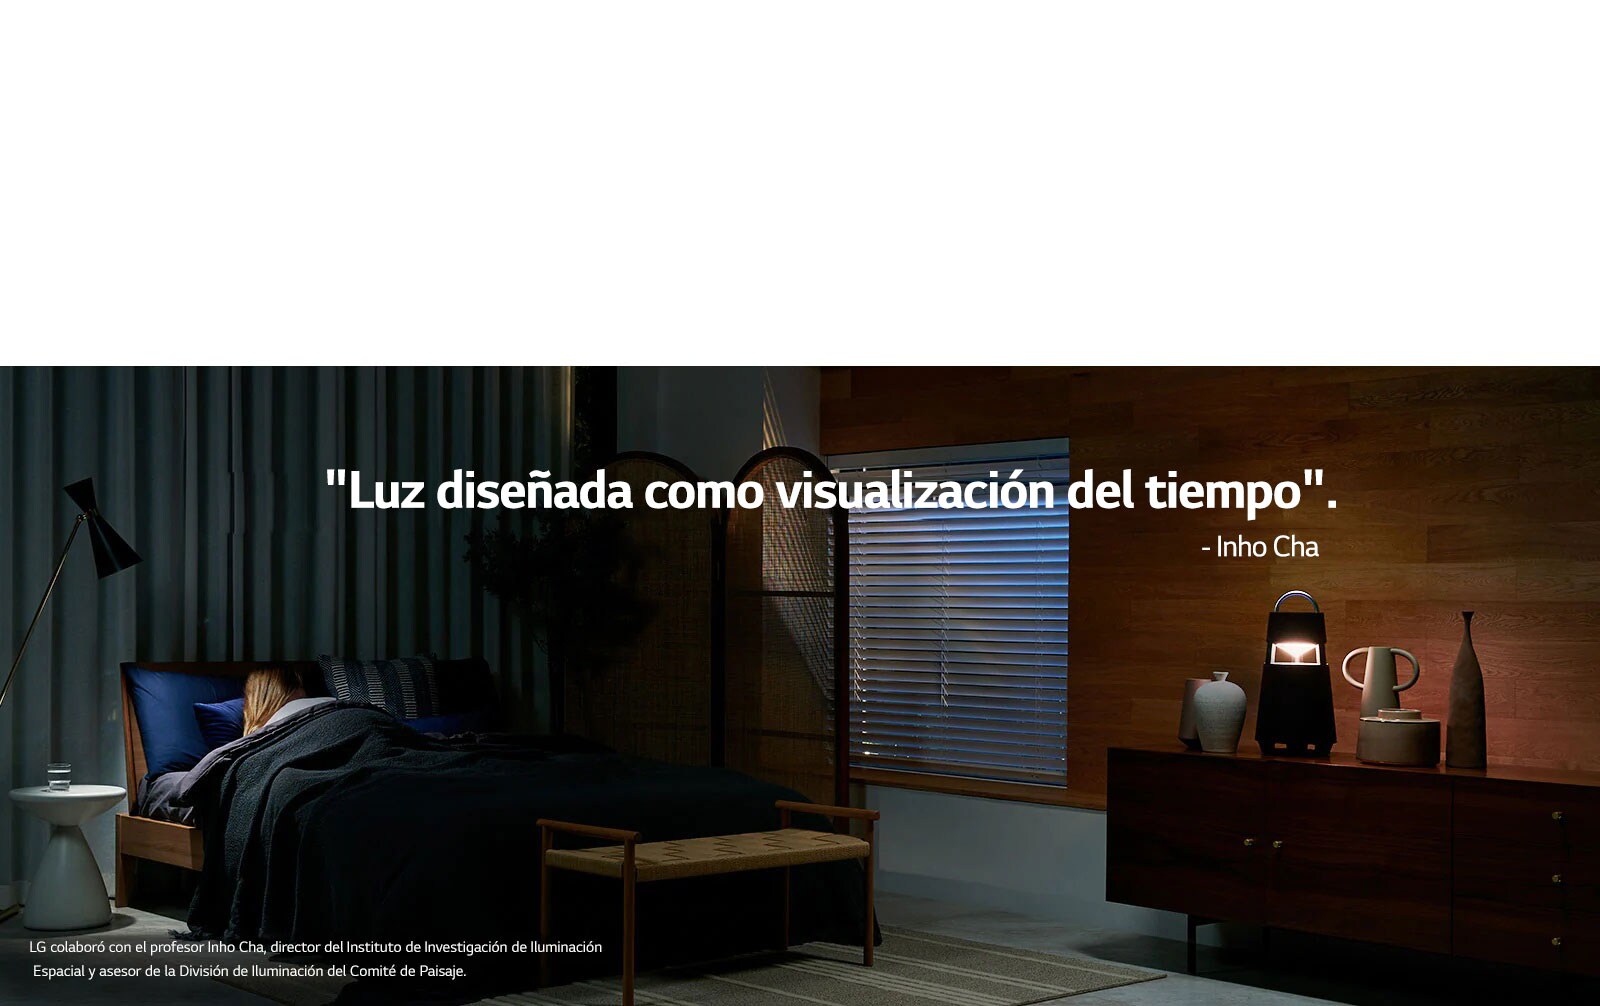 Imagen de XBOOM 360 que se ilumina en un estante en una habitación oscura. Una copia de la "luz designada como visualización del tiempo" se publica en la imagen.